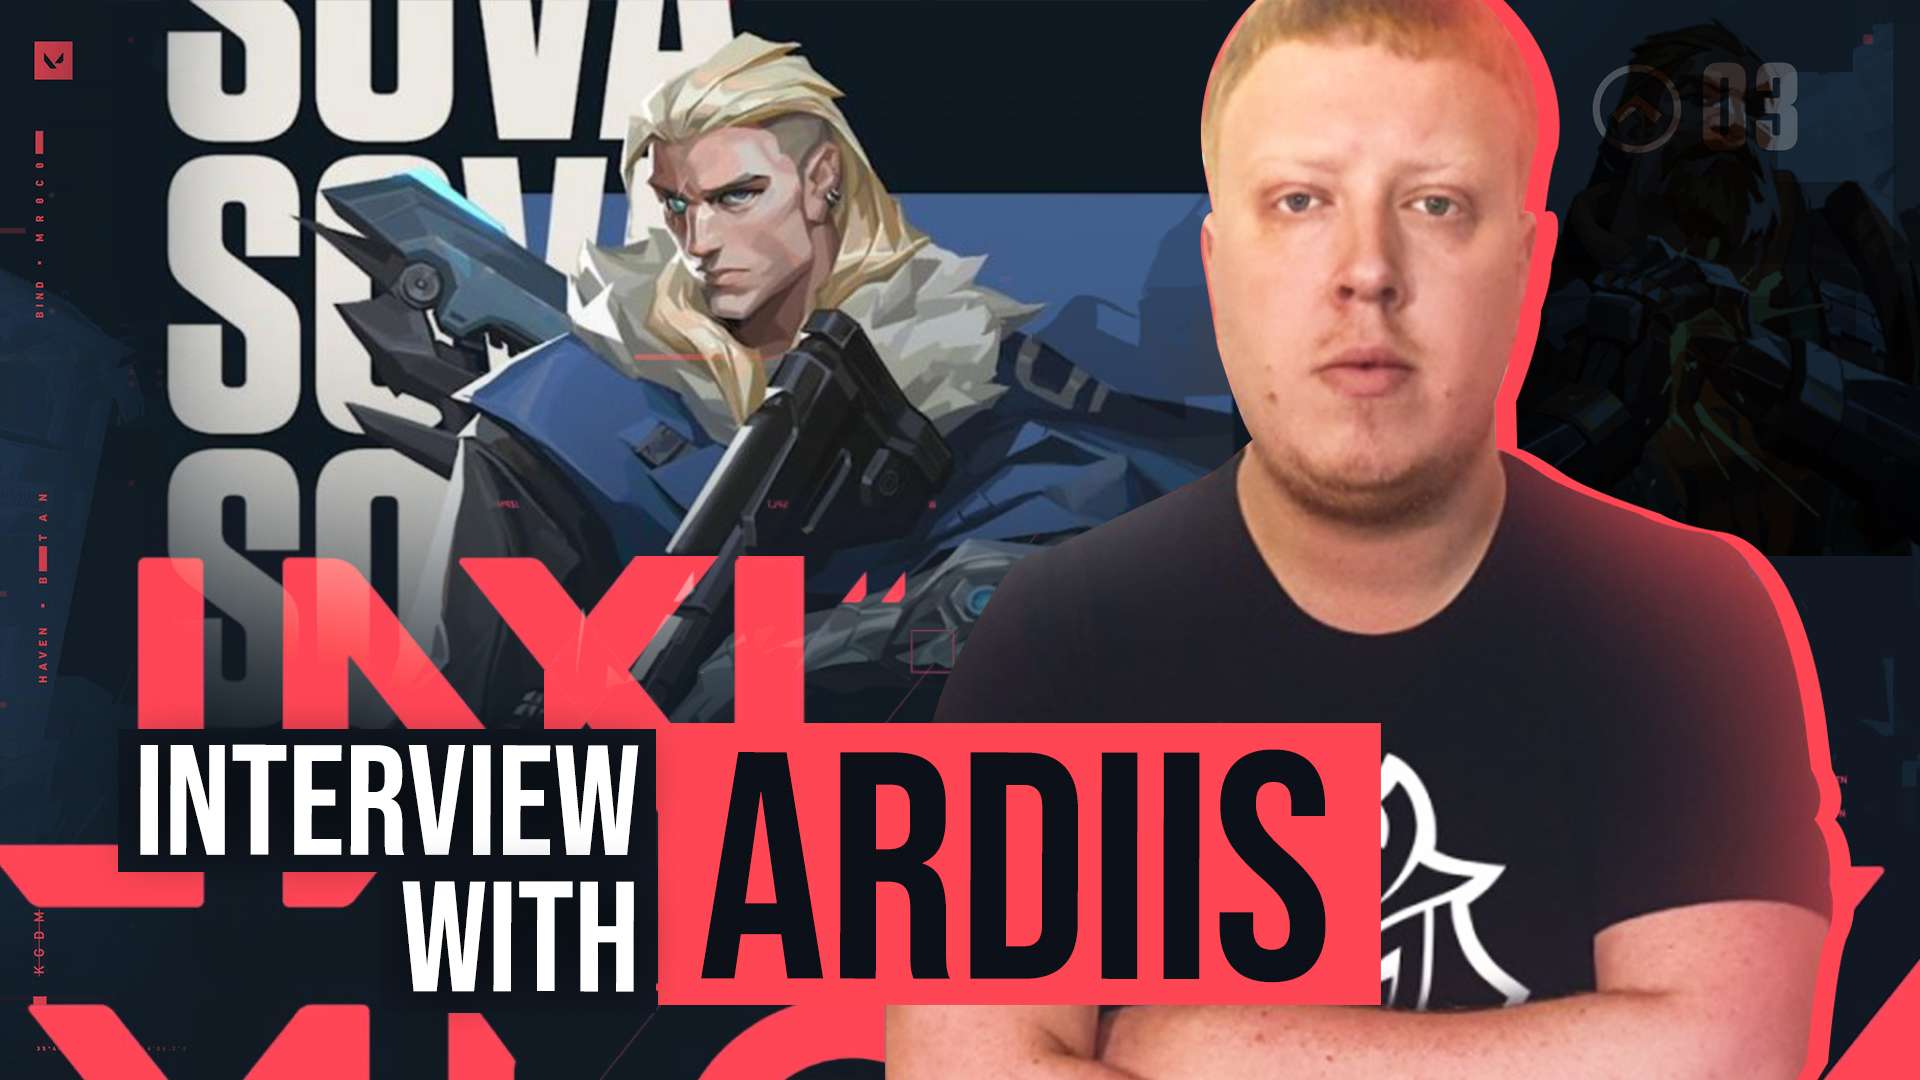 G2 Esports' ardiis interview.